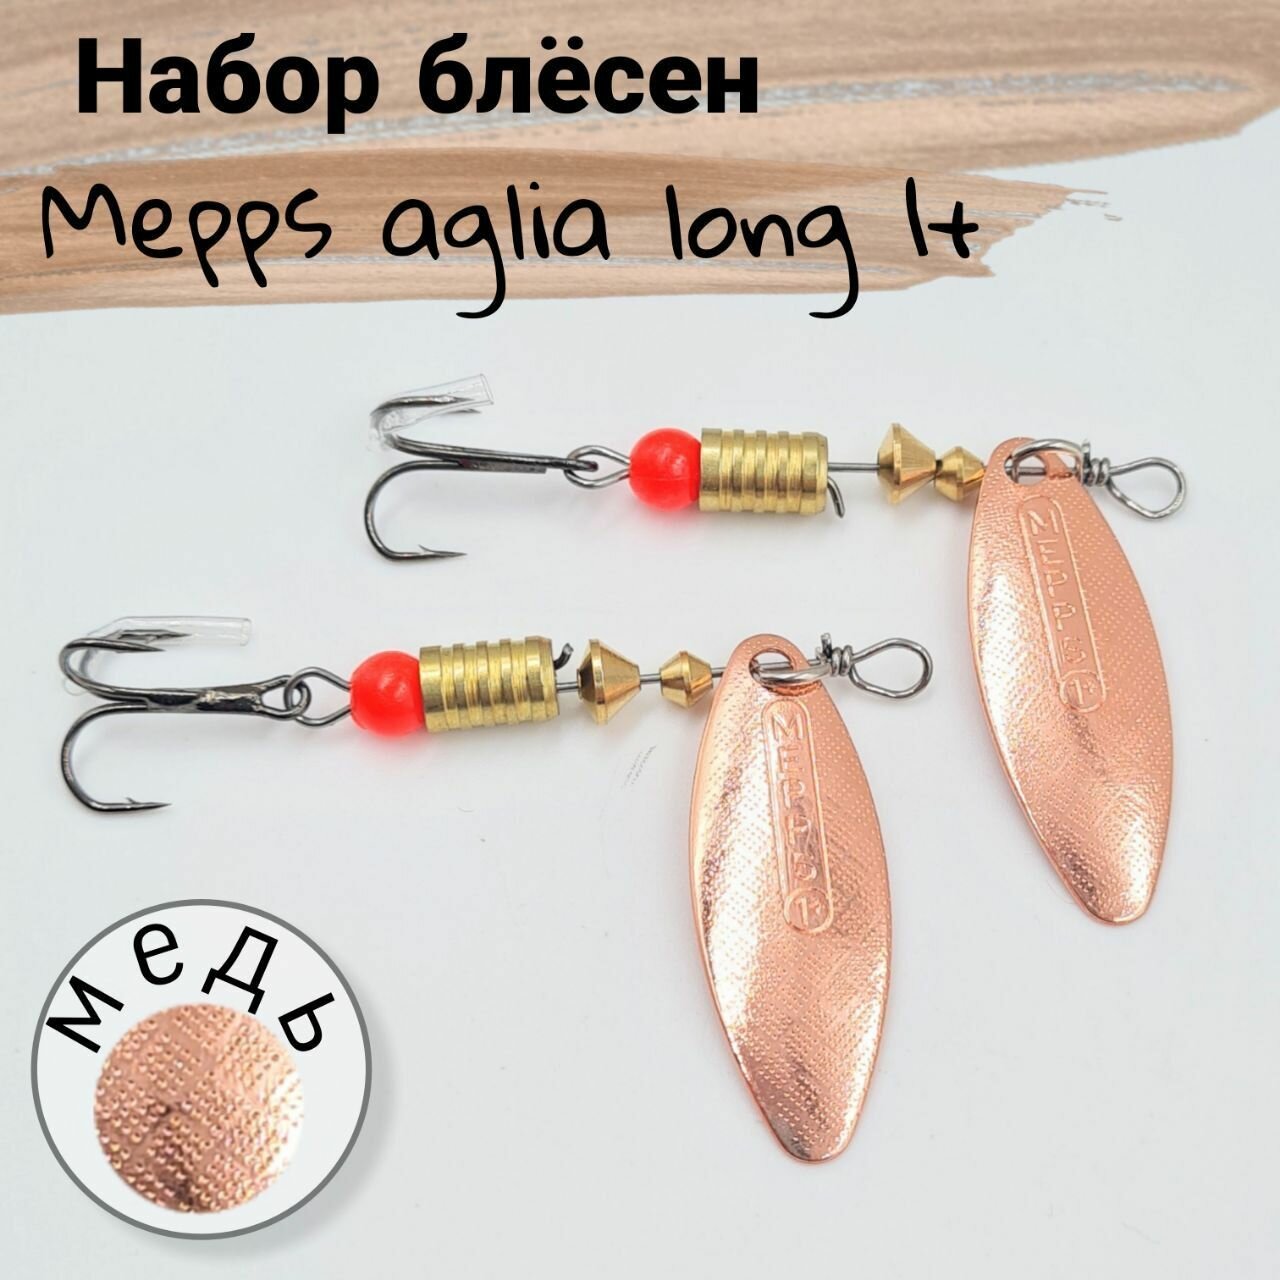 Блесна вертушка для рыбалки Mepps"s AGLIA long 1+ ; Набор из 2 блесен (4гр)вертушек для рыбалки на окунь, щуку, судак, берш, язь, голавль цвет(медь)